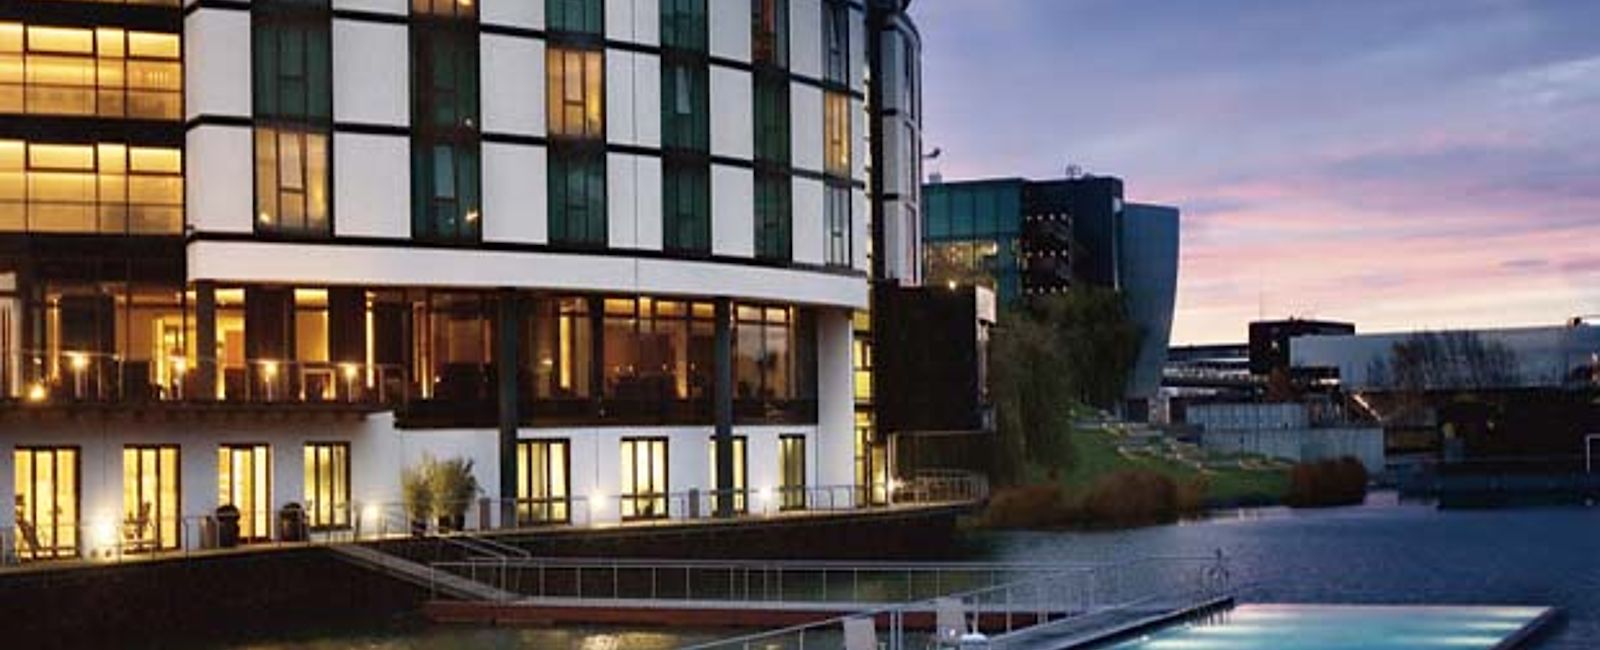 HOTEL TIPPS
 The Ritz-Carlton Wolfsburg 
 Exklusives Design-Hotel mit kulinarischen Köstlichkeiten 